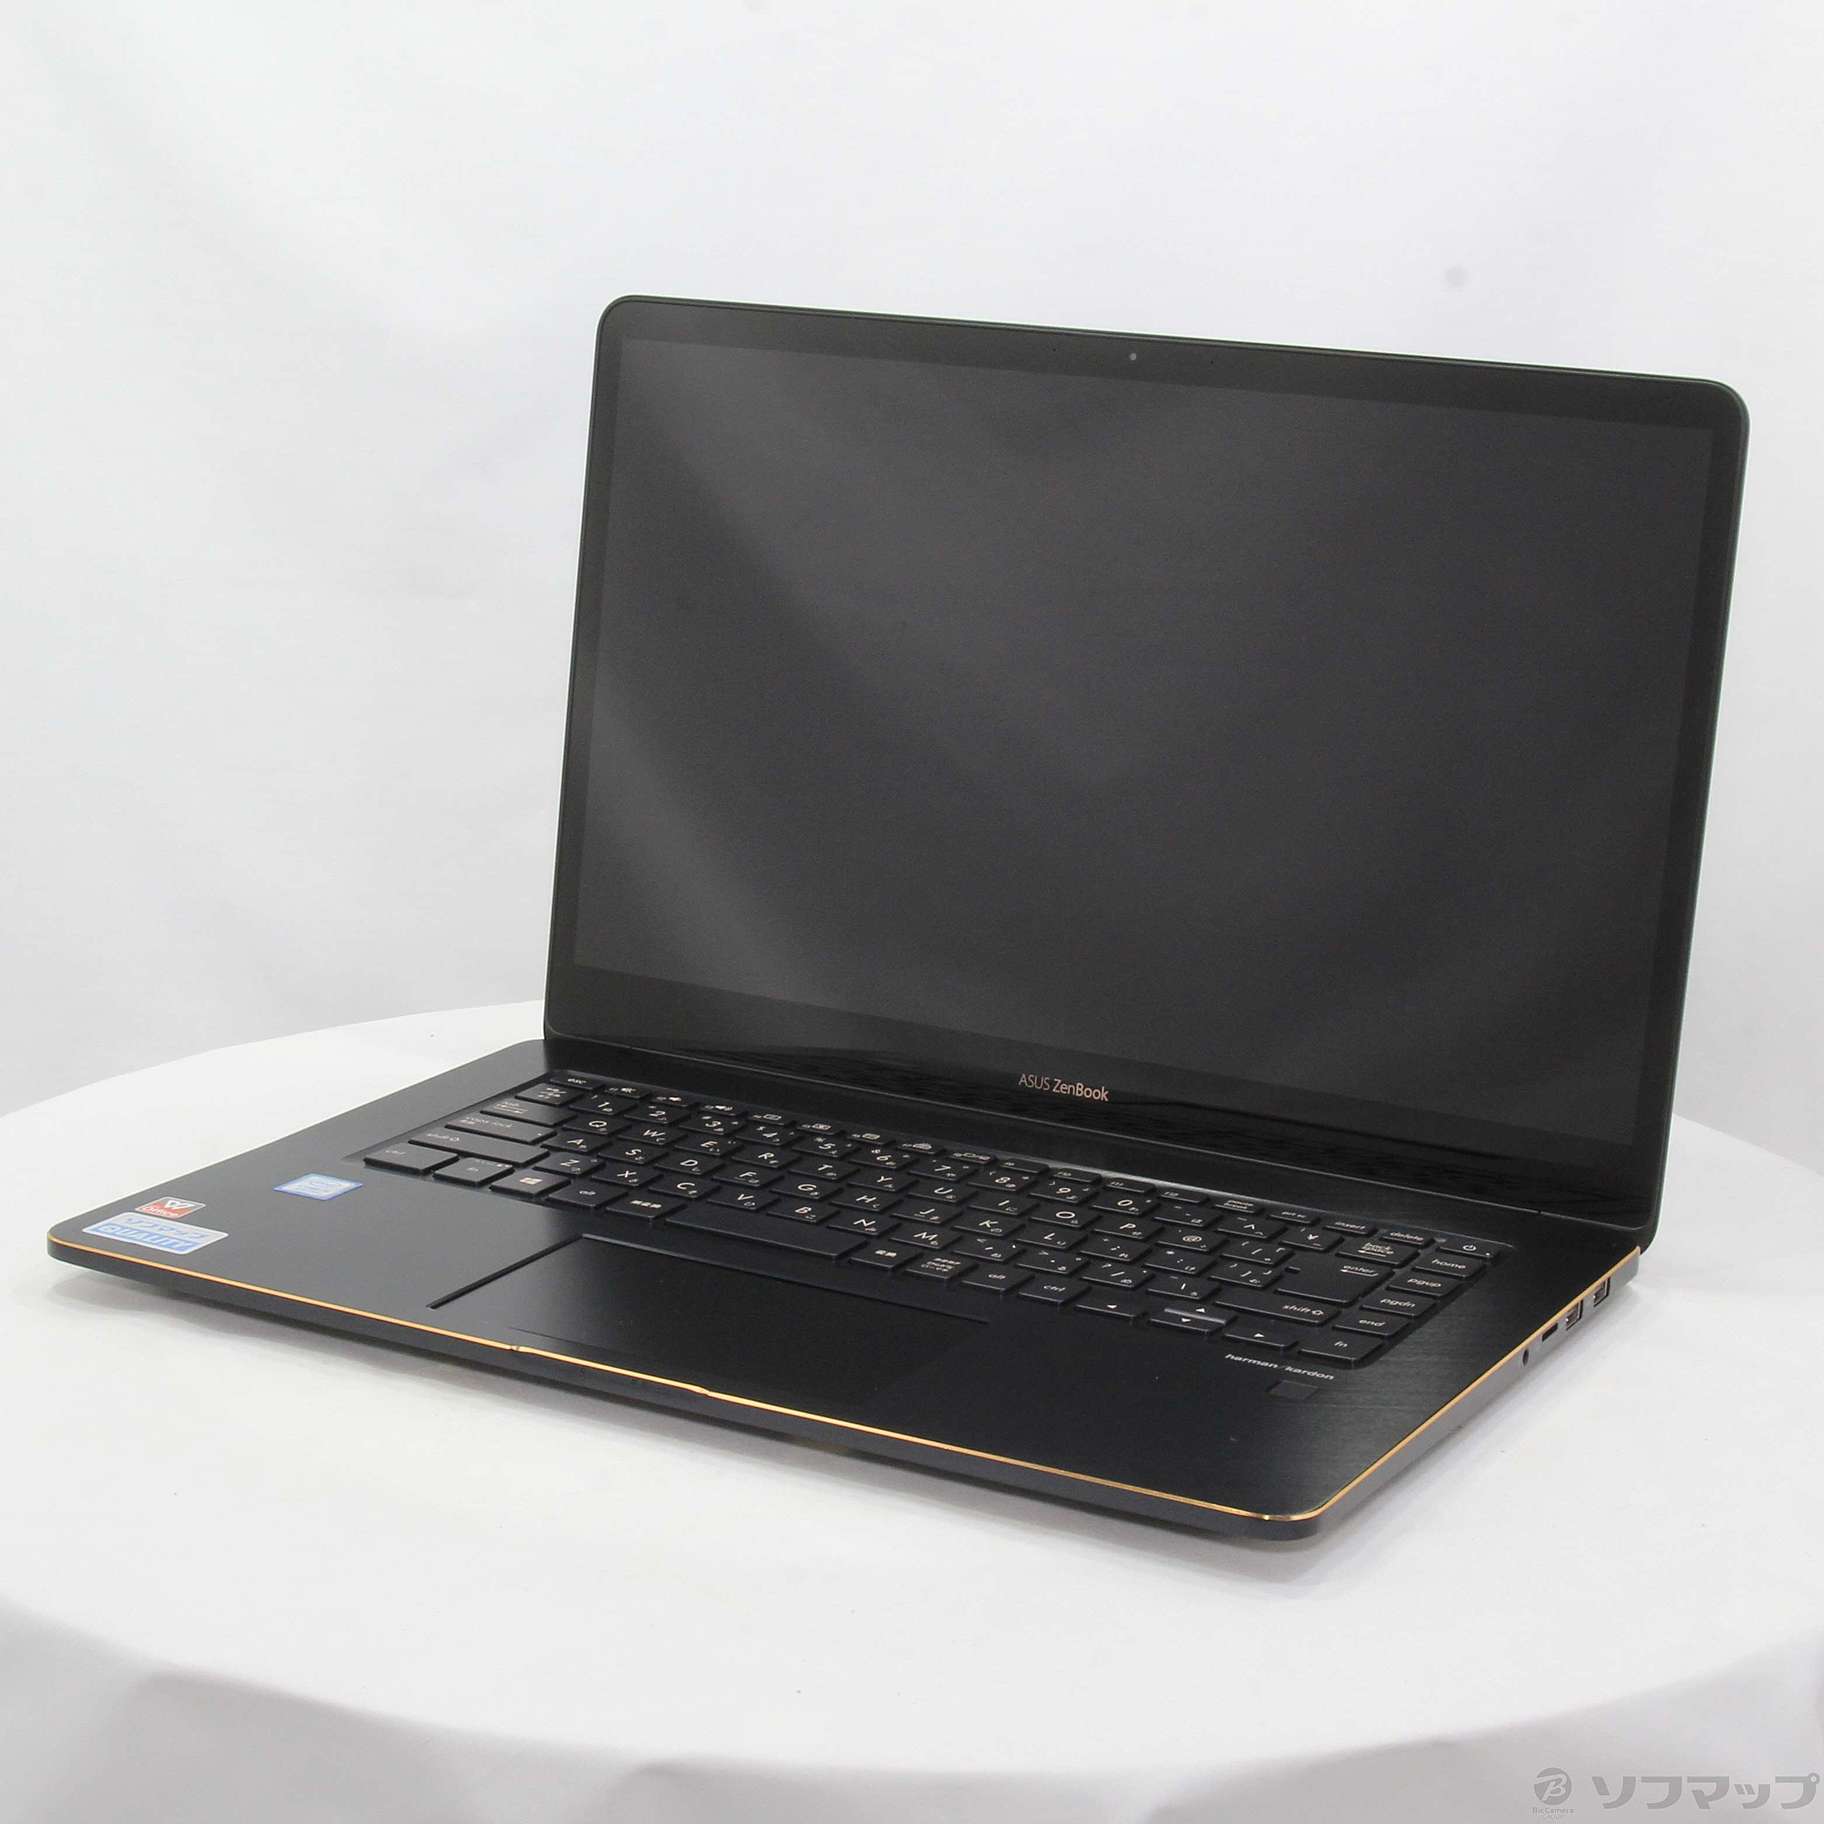 新品 ASUSノート ZenBook Pro15 UX580GE-8950X